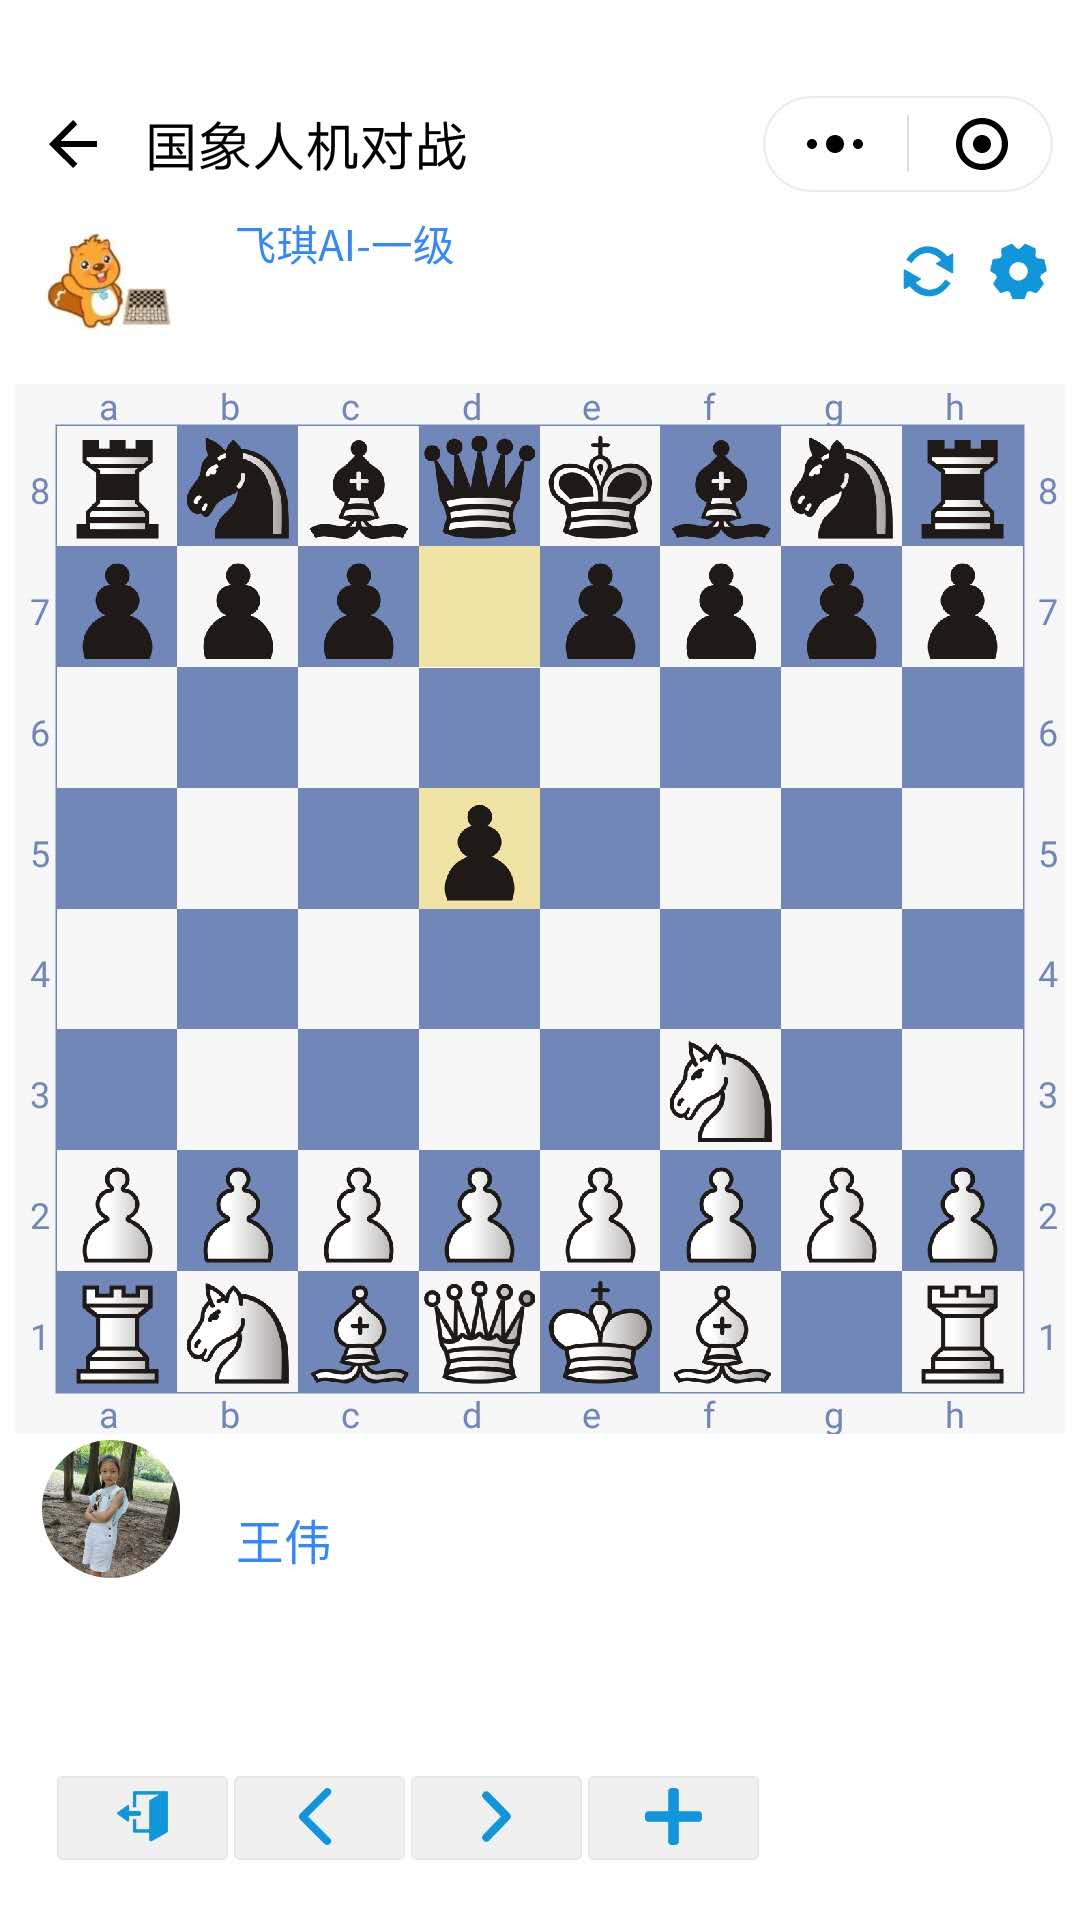 飞琪国际象棋_飞琪国际象棋小程序_飞琪国际象棋微信小程序